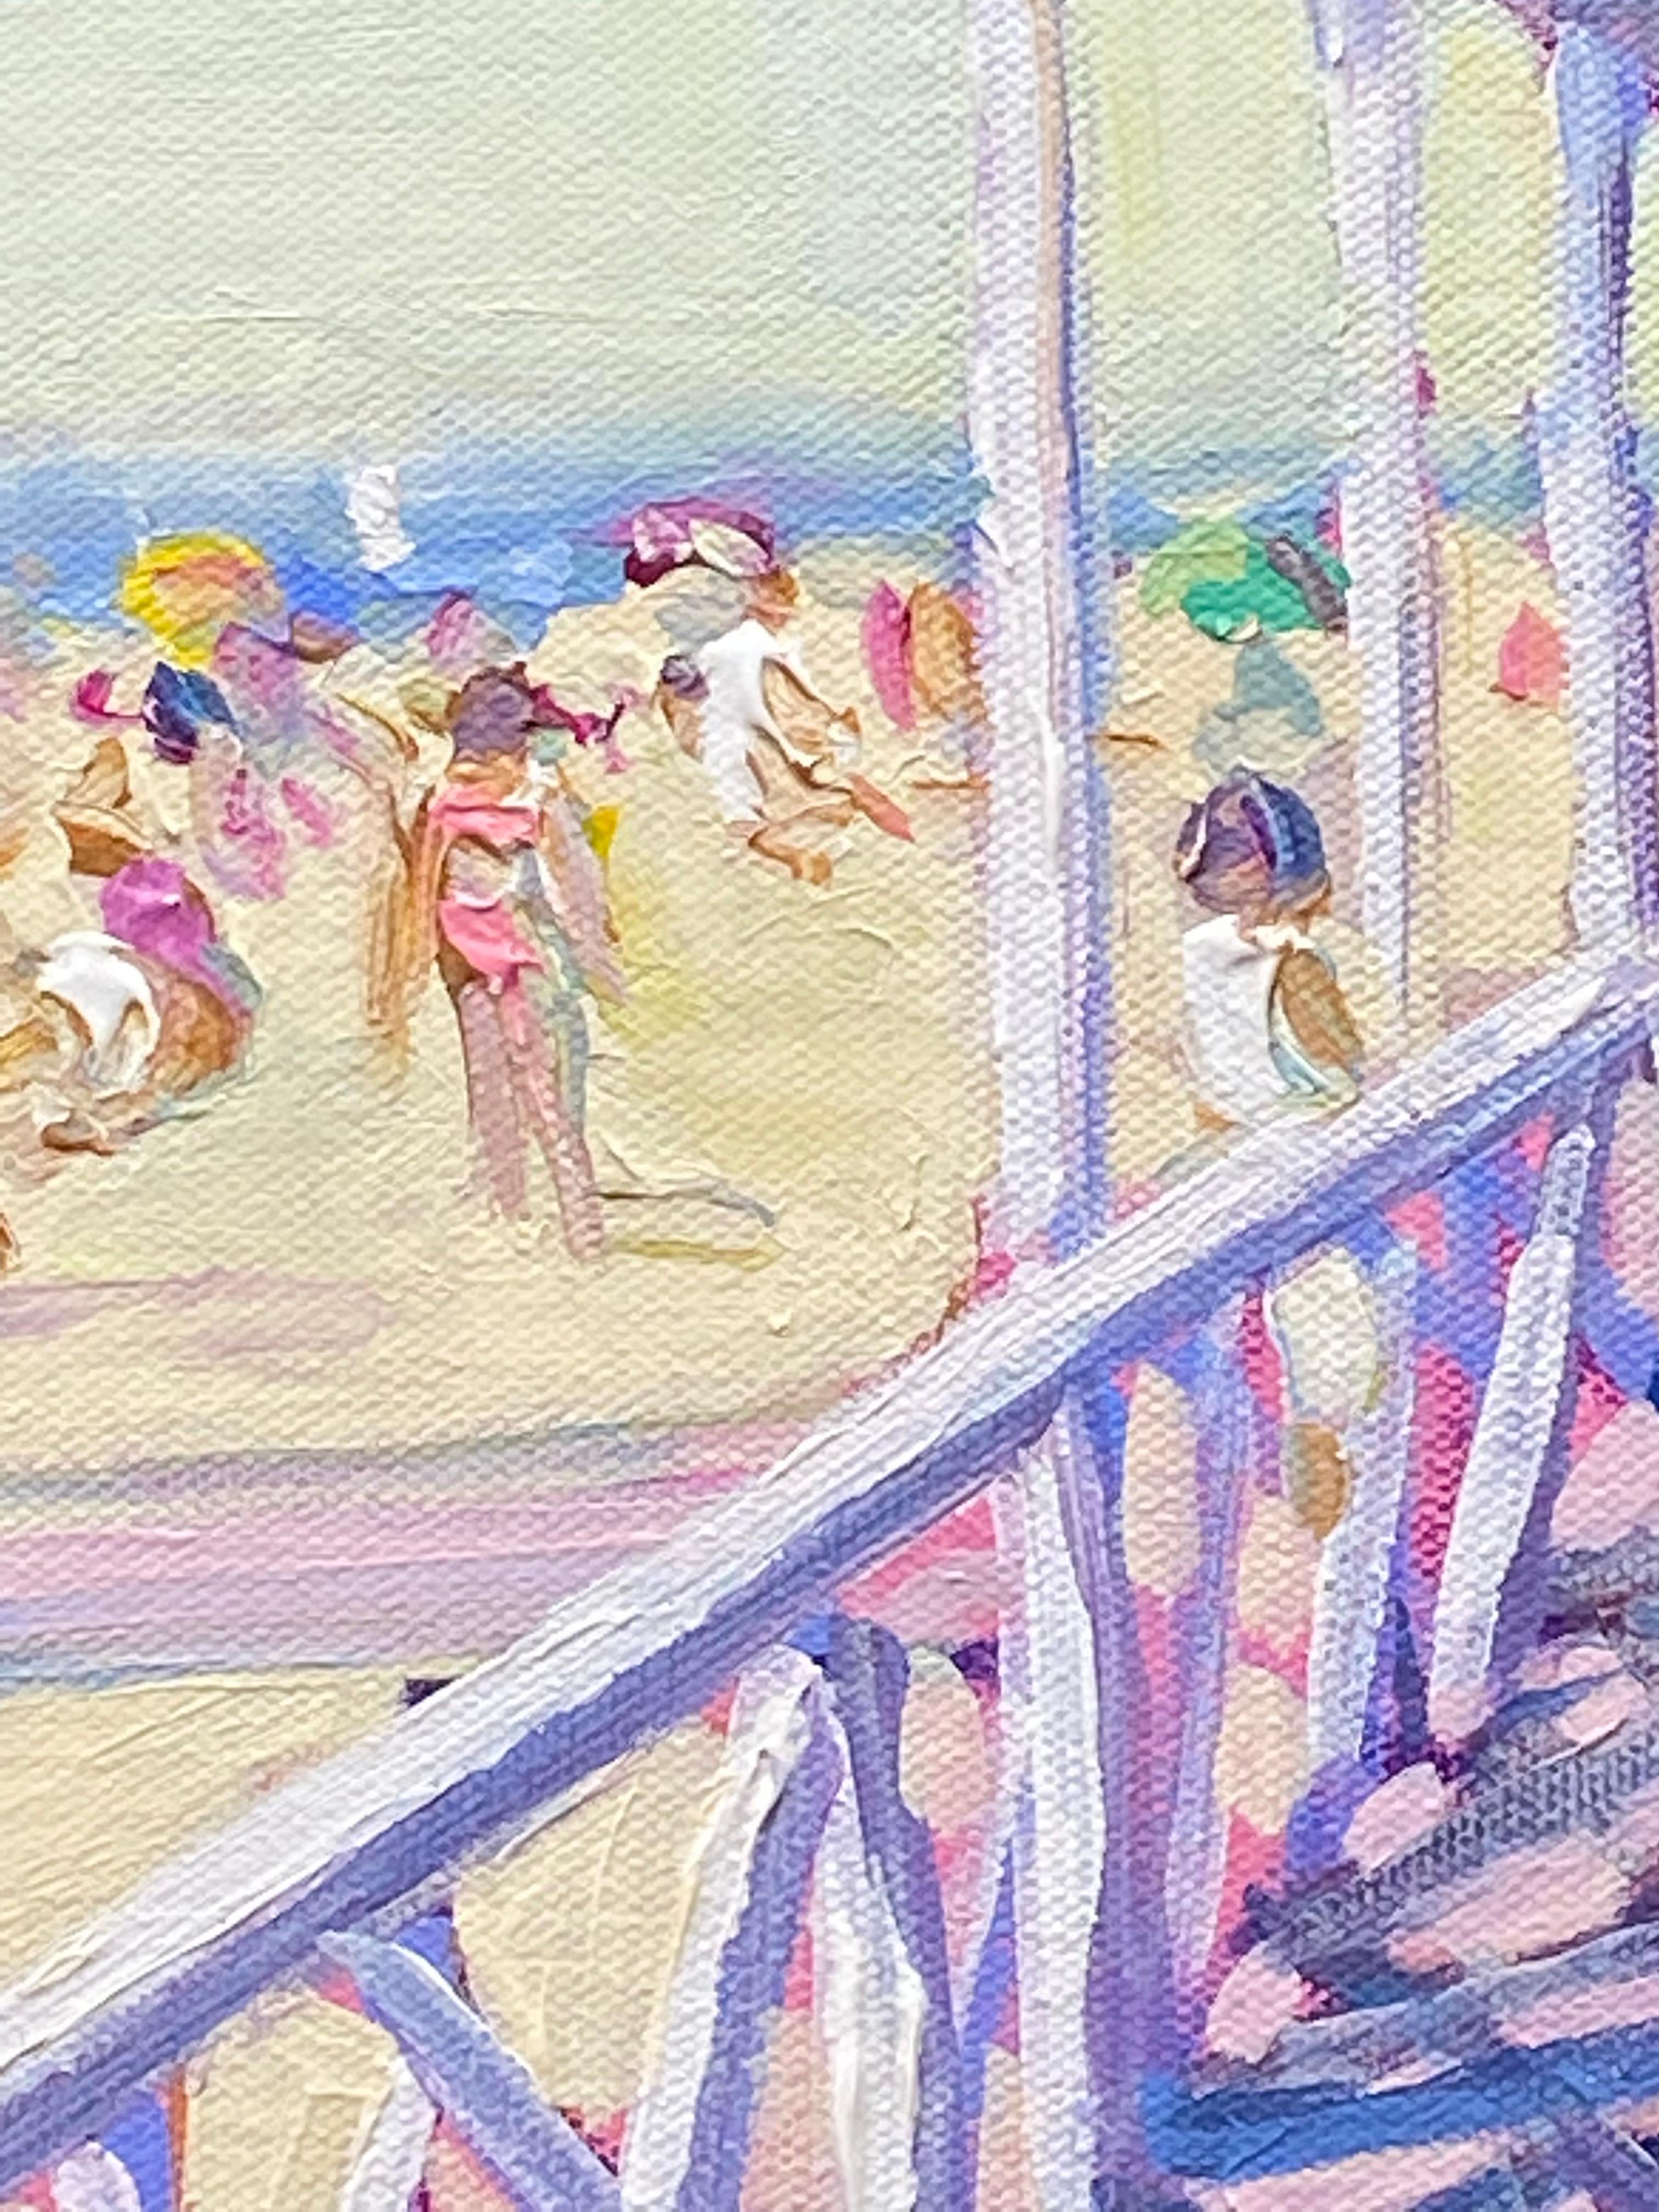 Pavilion Cooper's Beach Southampton - Painting de John Crimmins